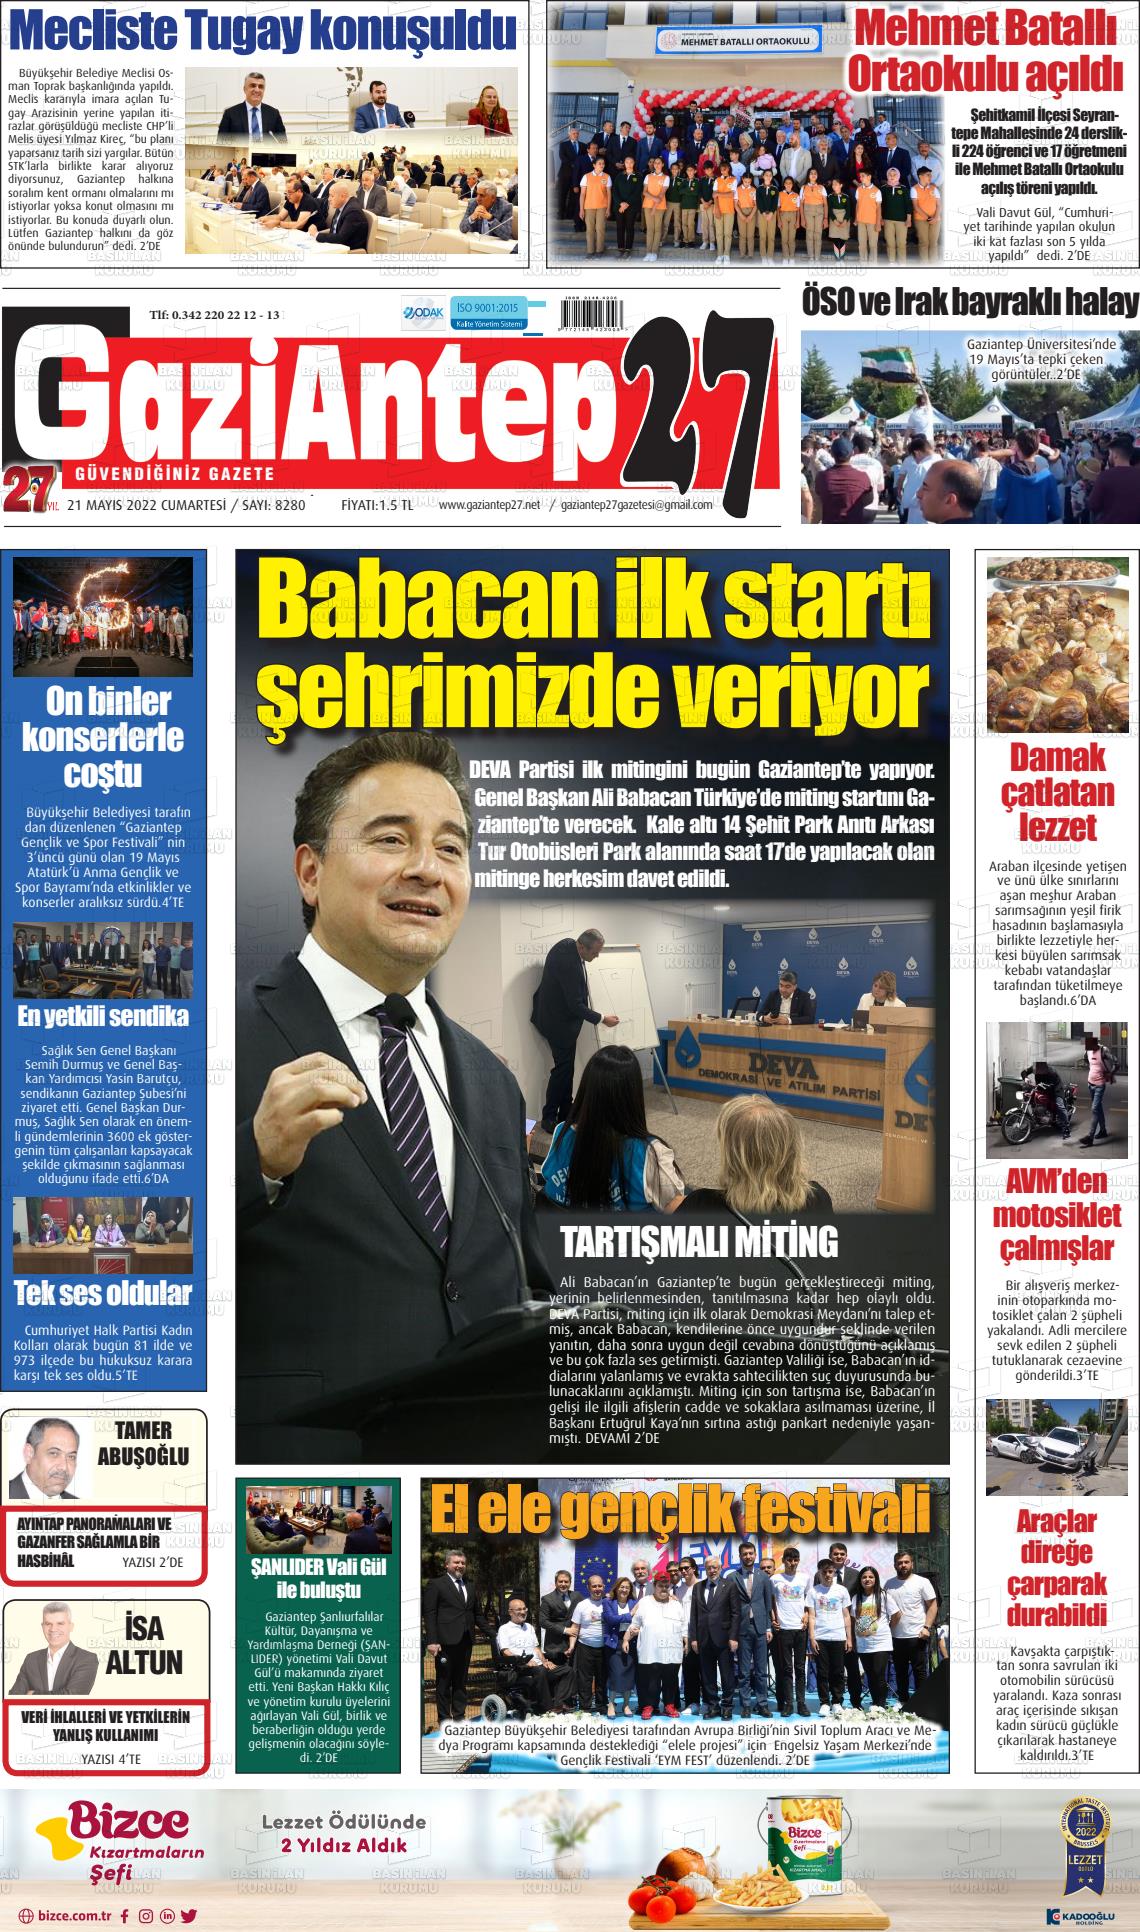 21 Mayıs 2022 Gaziantep 27 Gazete Manşeti